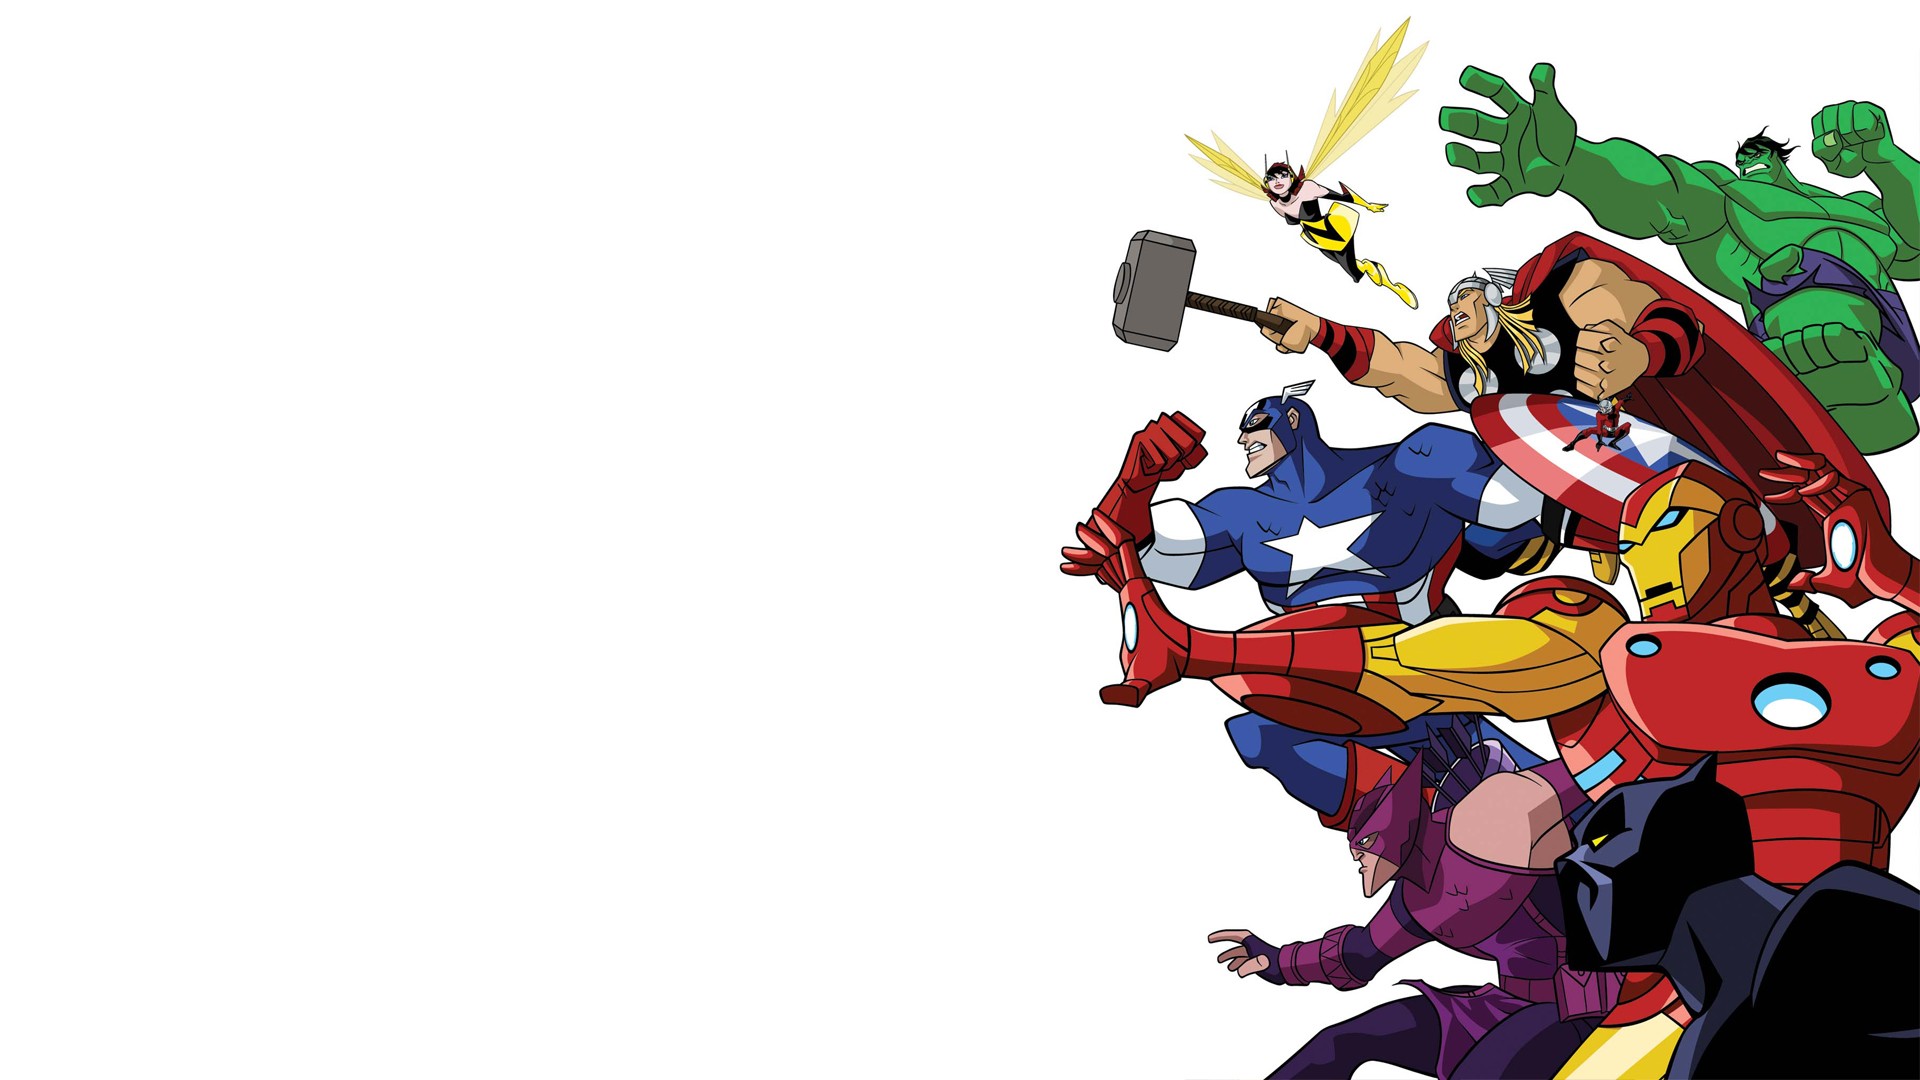 Скачать обои бесплатно Комиксы, Железный Человек, Капитан Америка, Мстители, Черная Пантера (Marvel Comics), Халк, Оса (Marvel Comics), Тор, Соколиный Глаз картинка на рабочий стол ПК